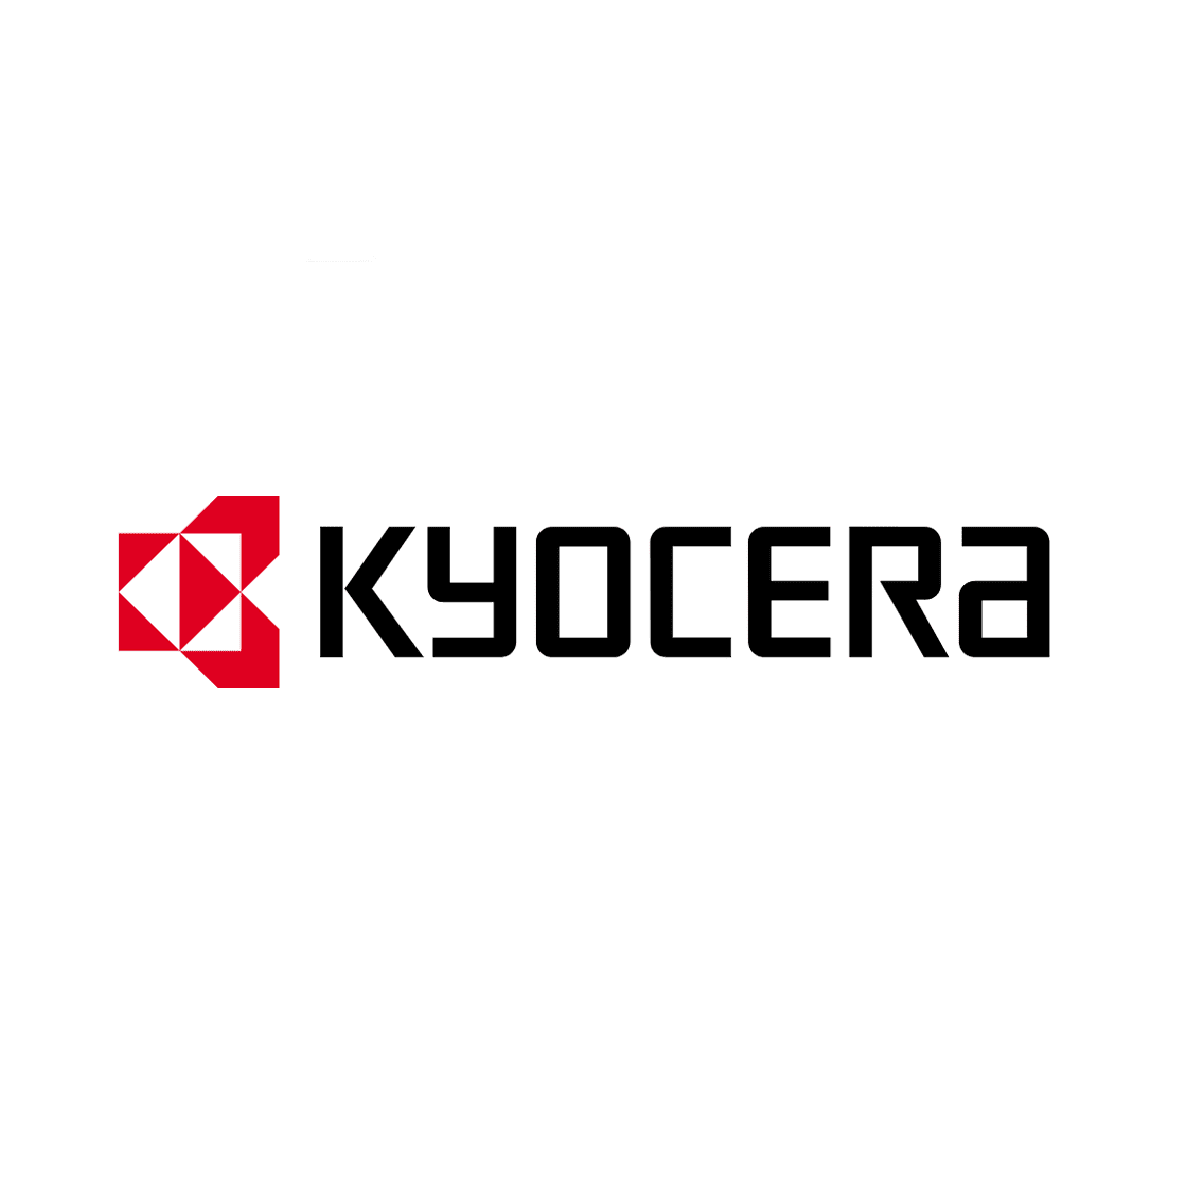 Kyocera Logo Spartoner24